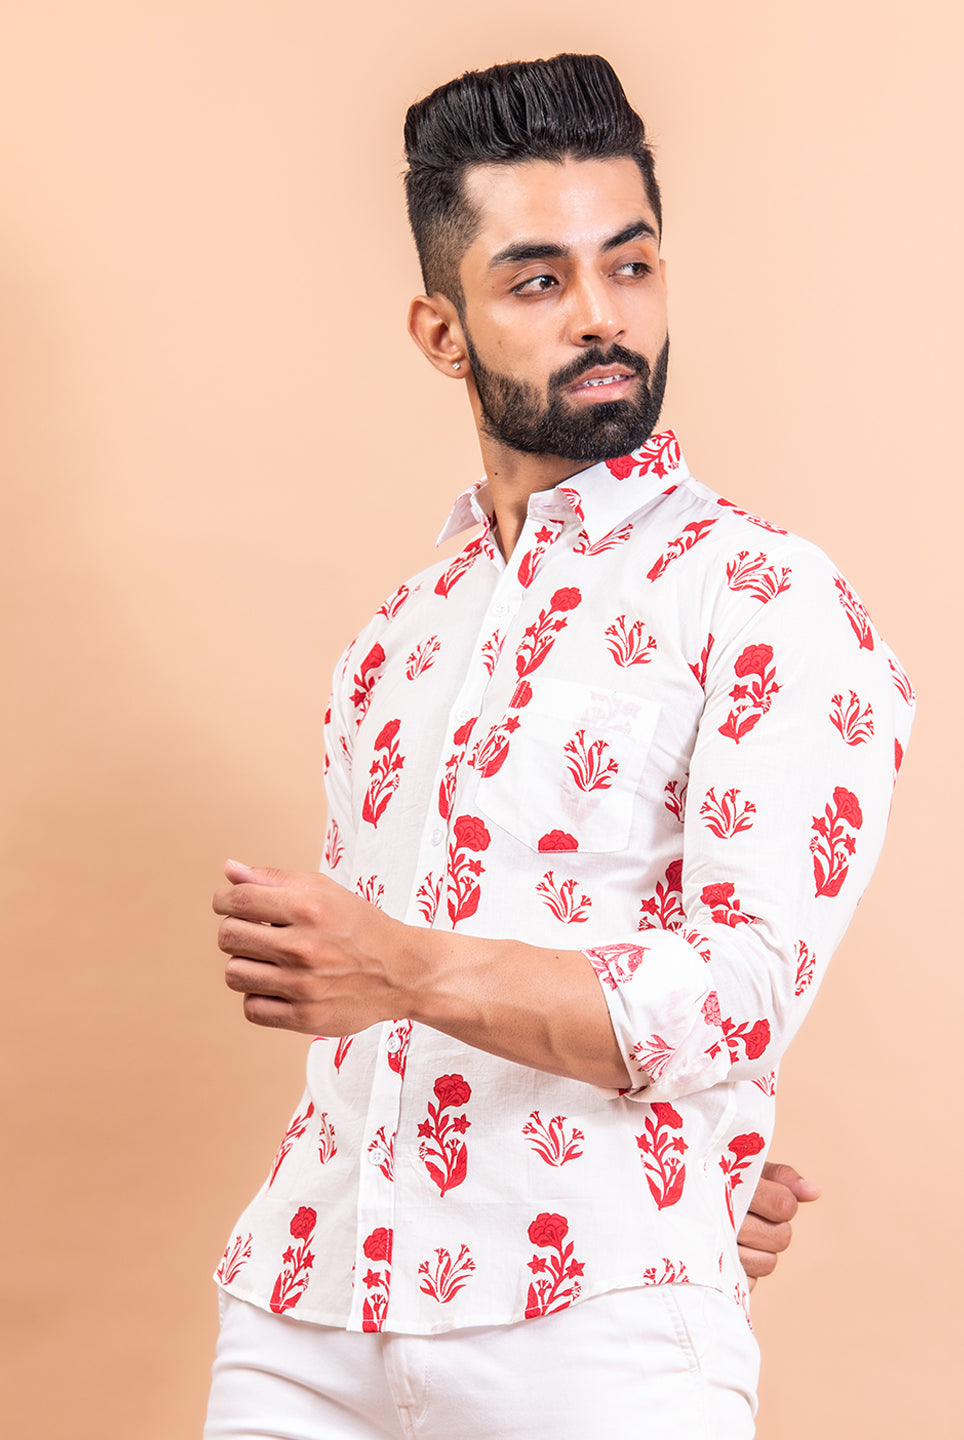 printed floral shirts